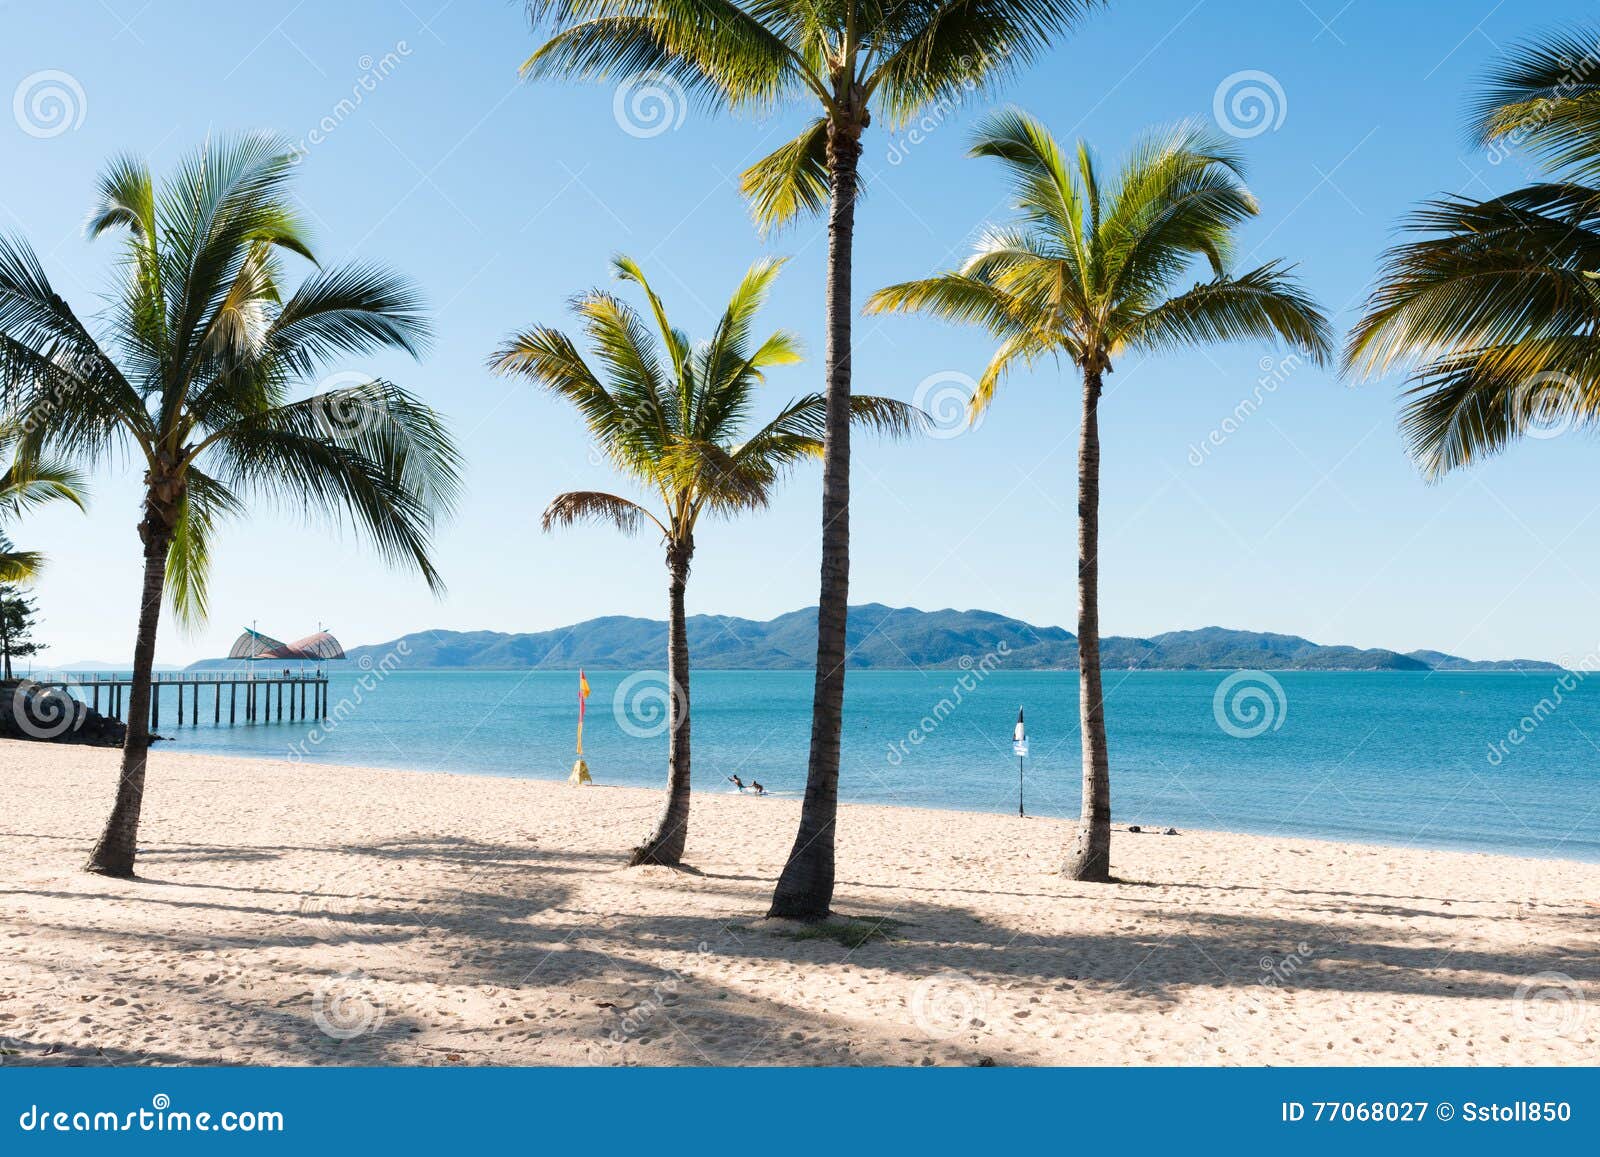 海滩热带的可可椰子. 美丽的热带海滩子线，汤斯维尔和磁岛在背景中